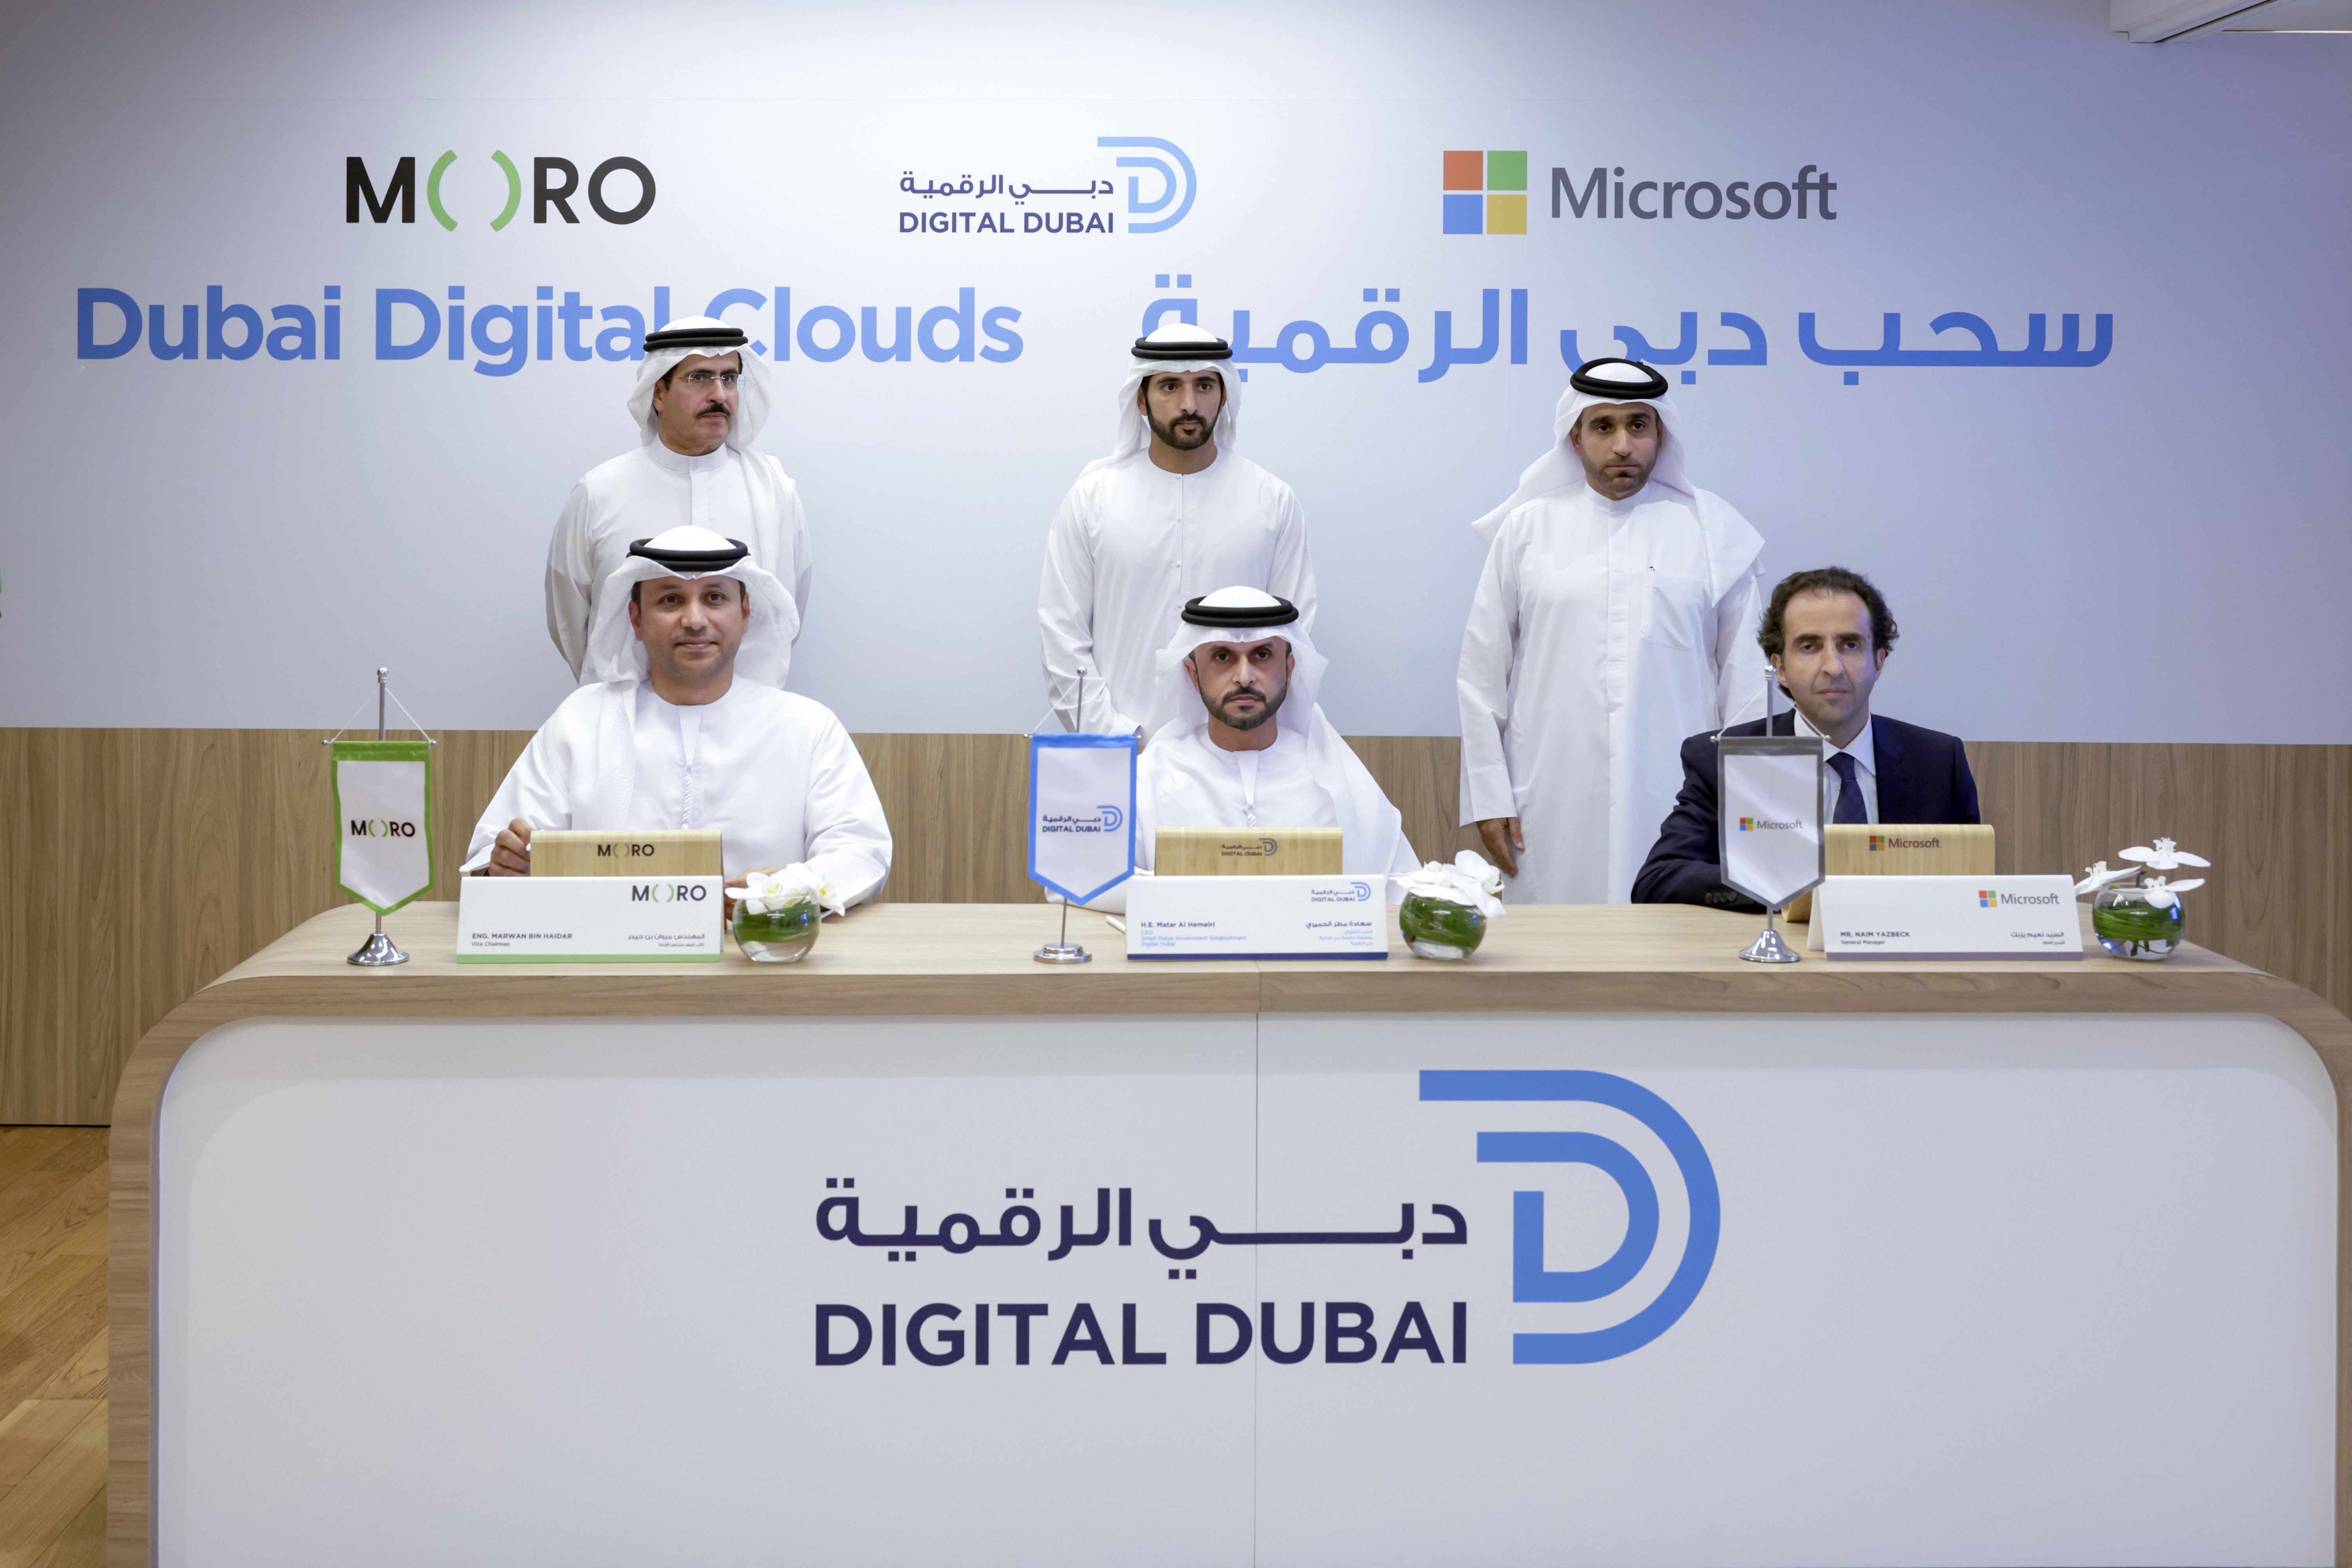 حمدان بن محمد يطلق مشروع "سُحُب دبي الرقمية"
